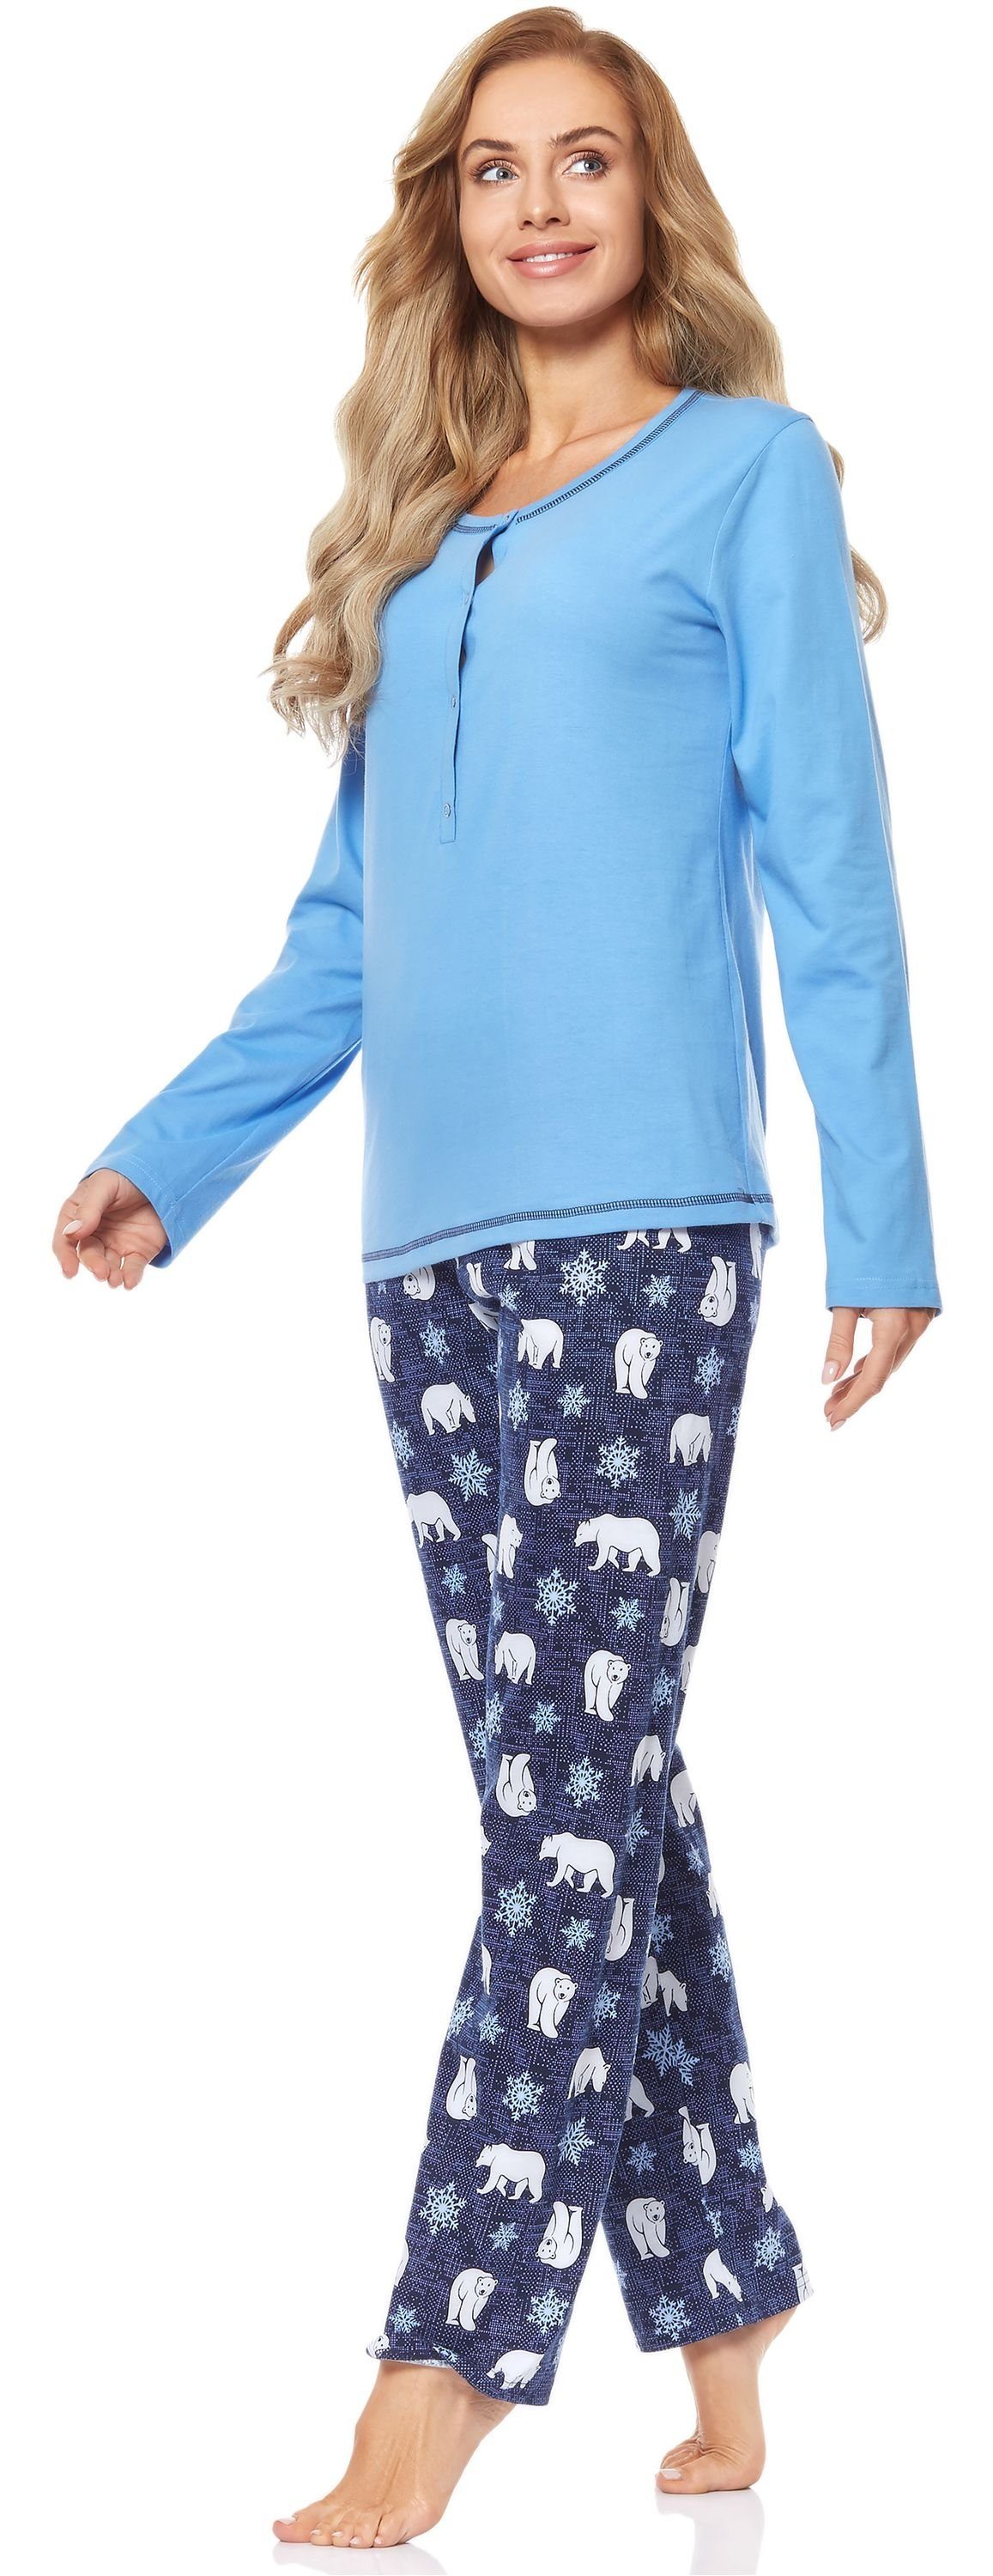 Merry Damen Style Schlafanzug BlauerBär 2112 Schlafanzug